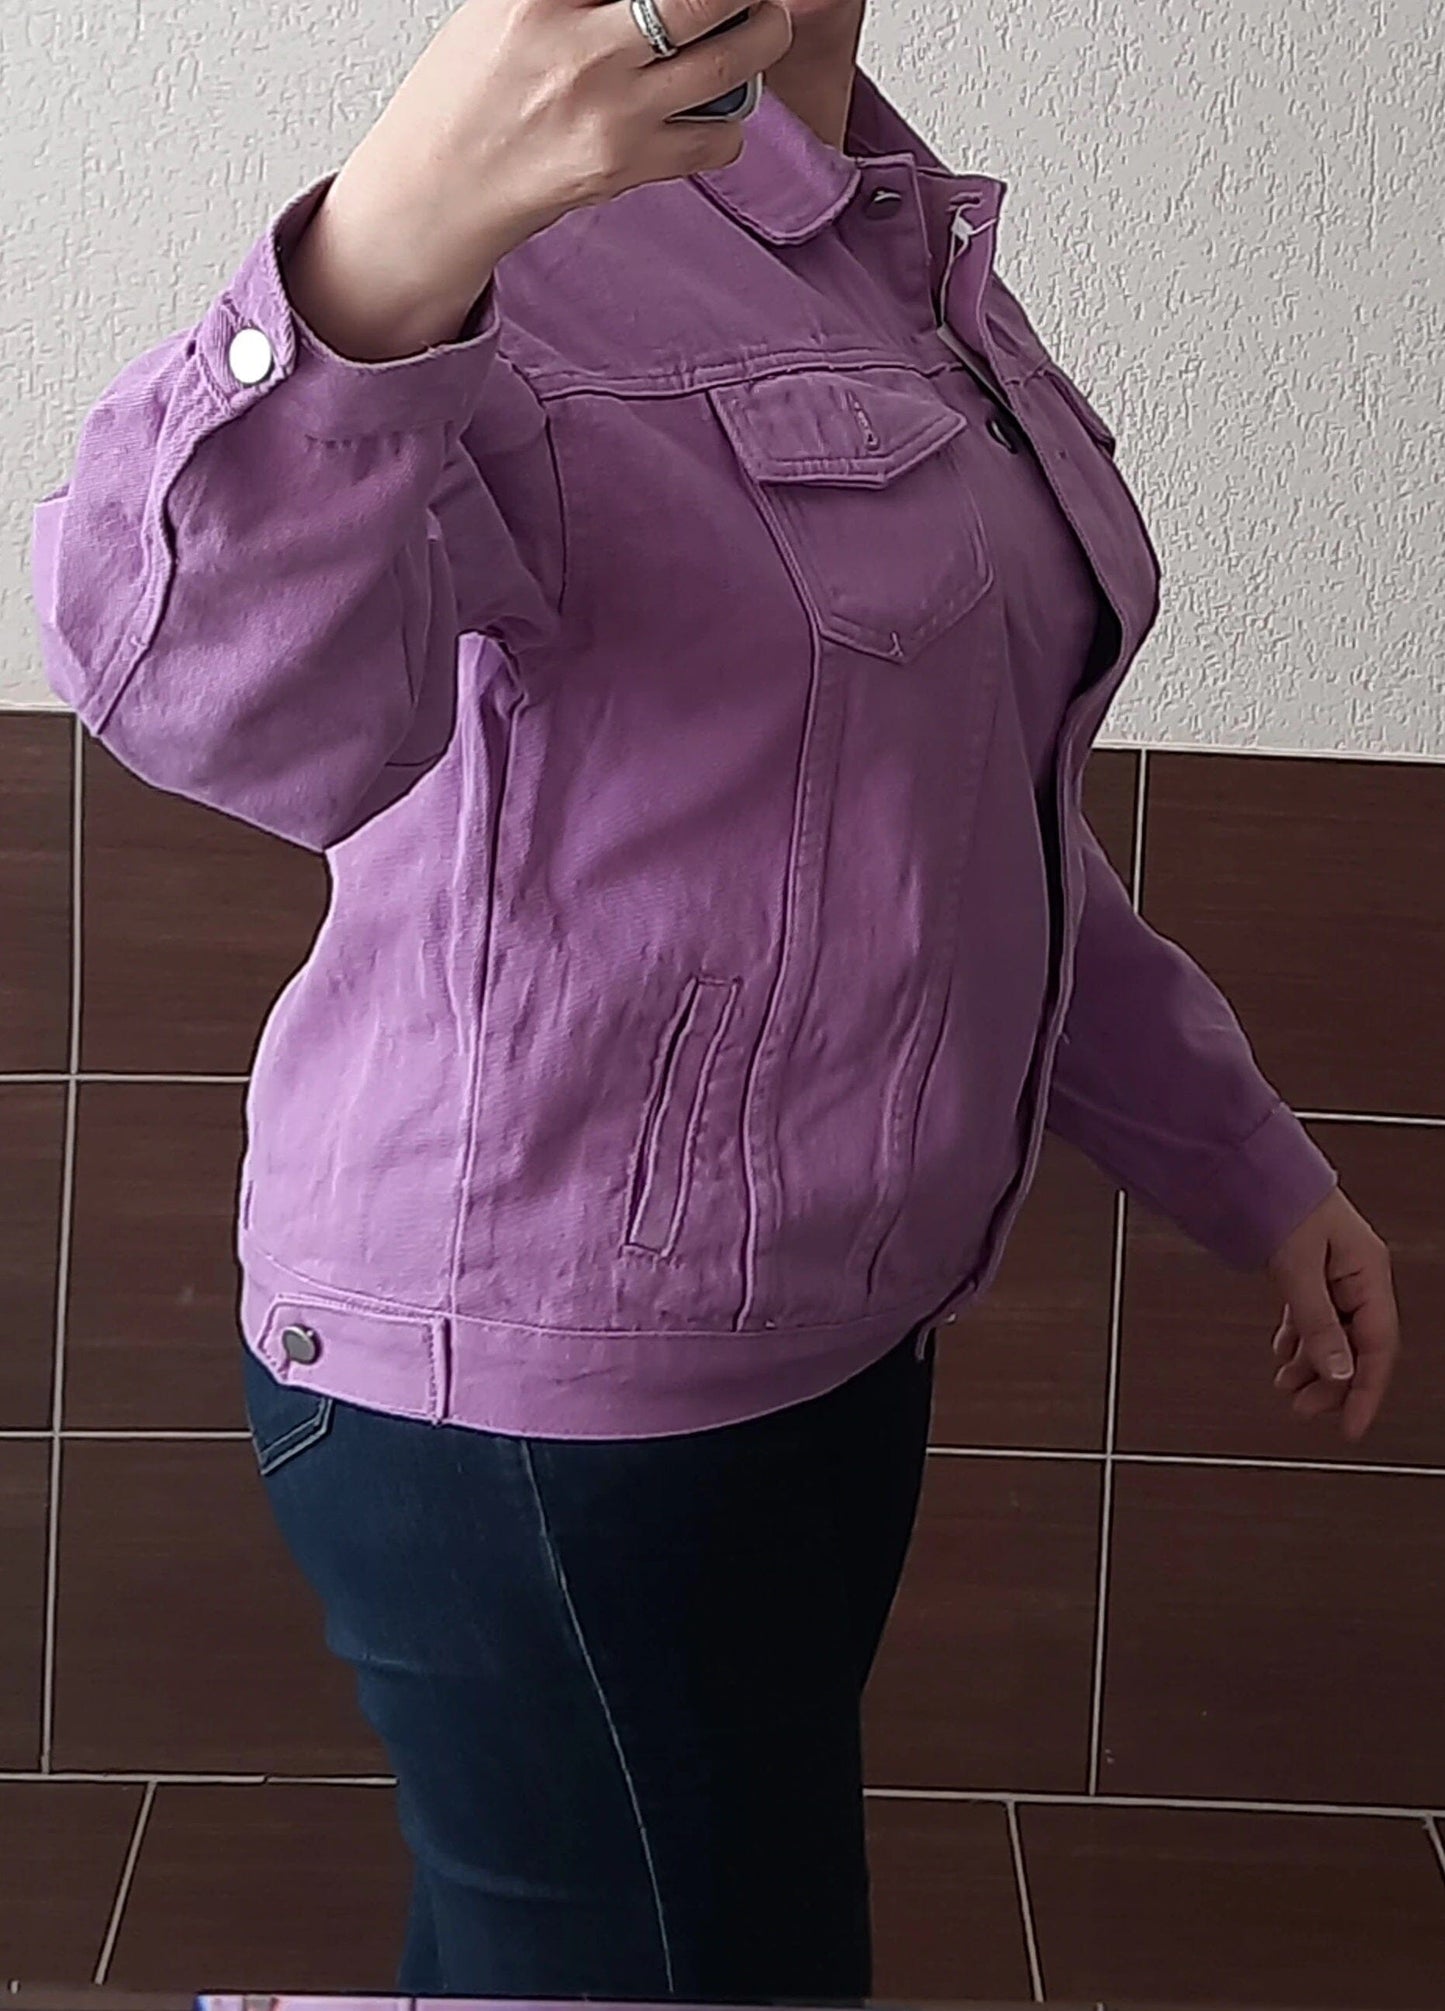 Women's Purple Denim Jackets